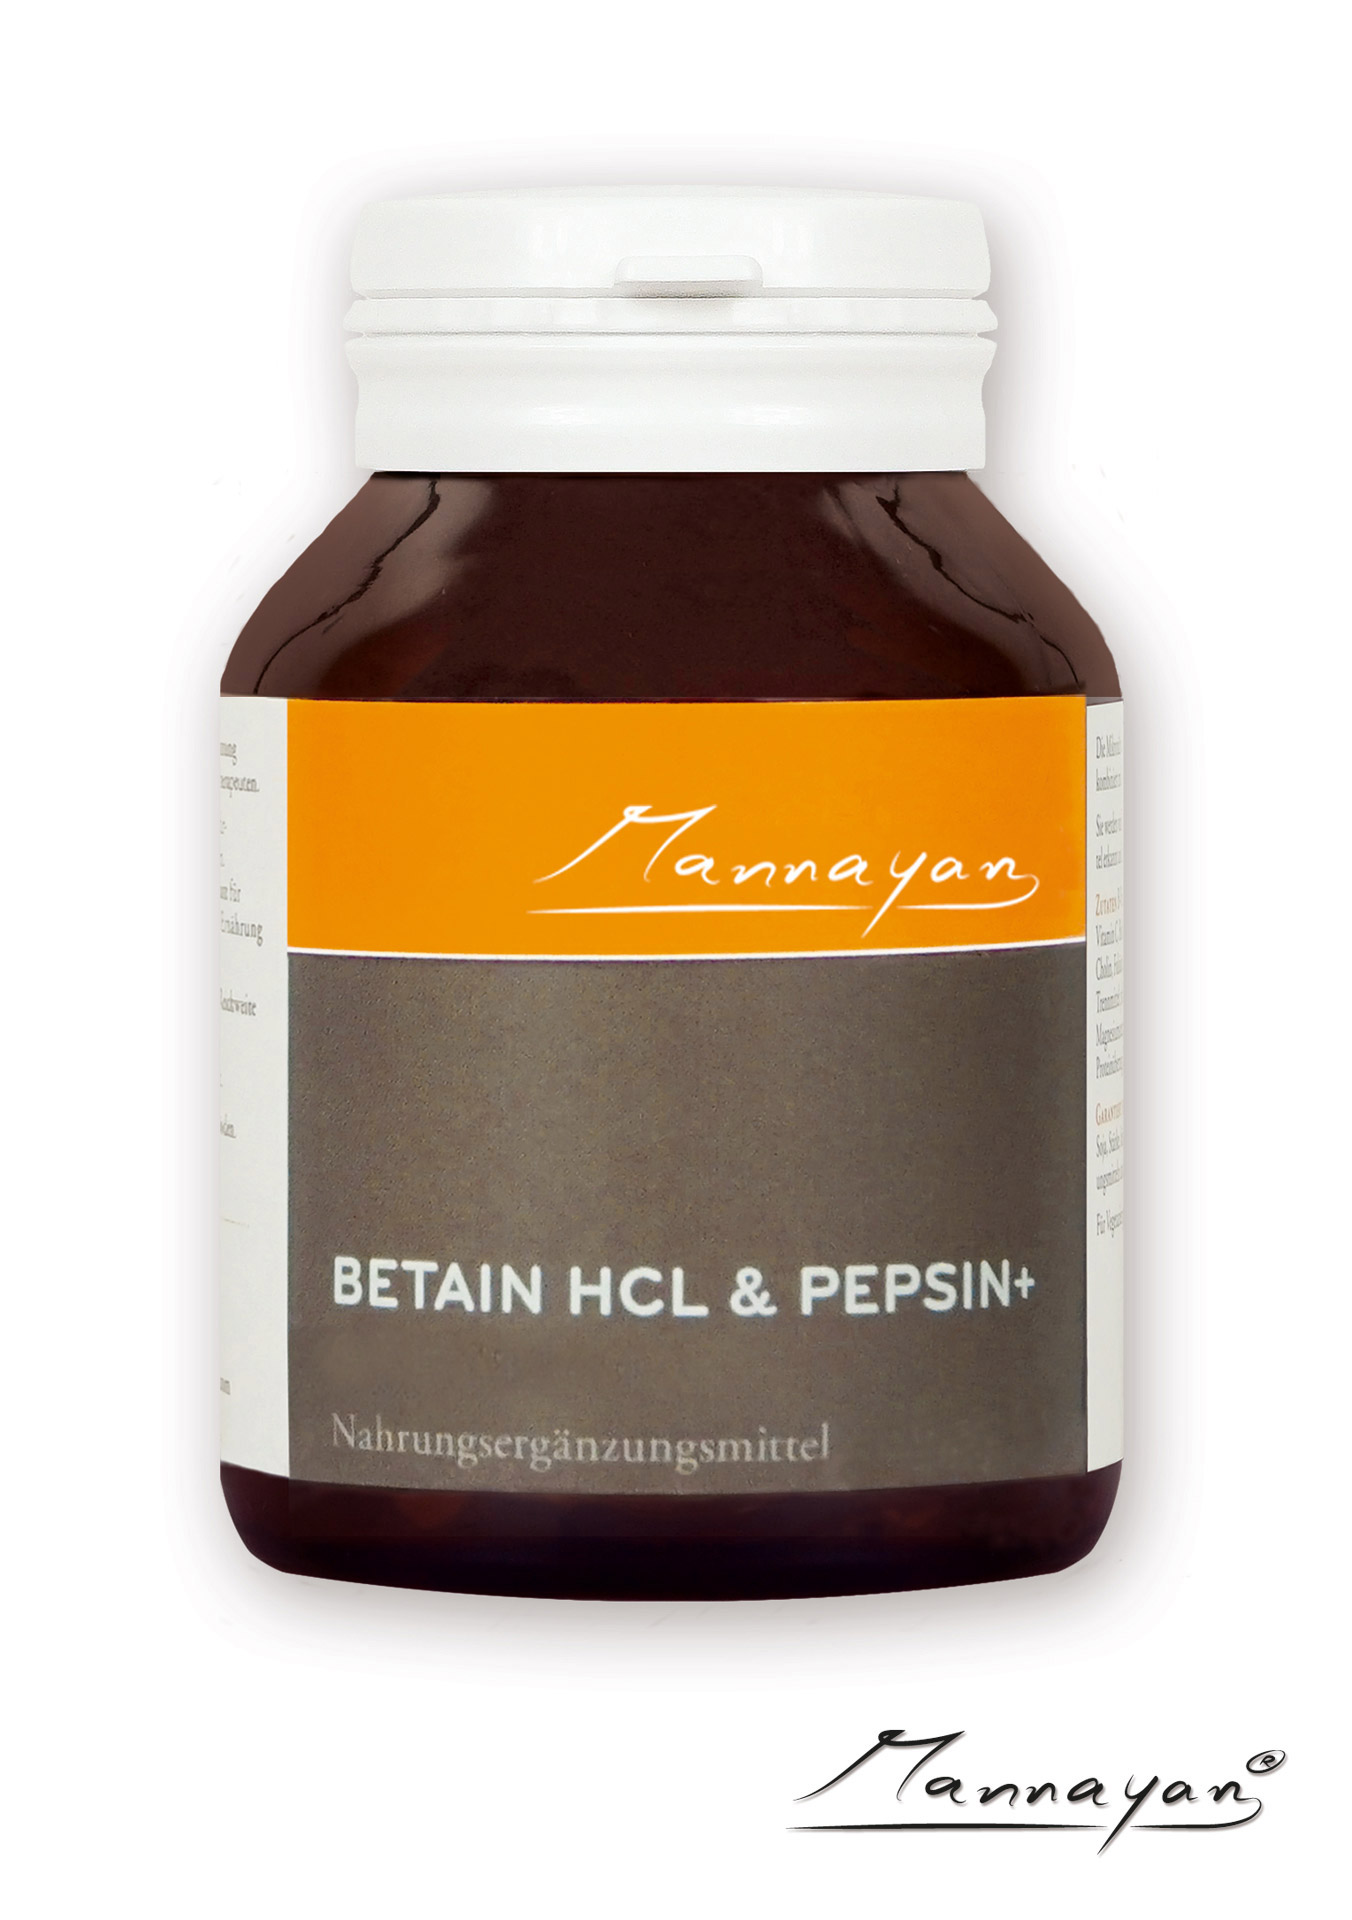 Betain HCL und Pepsin+ von Mannayan